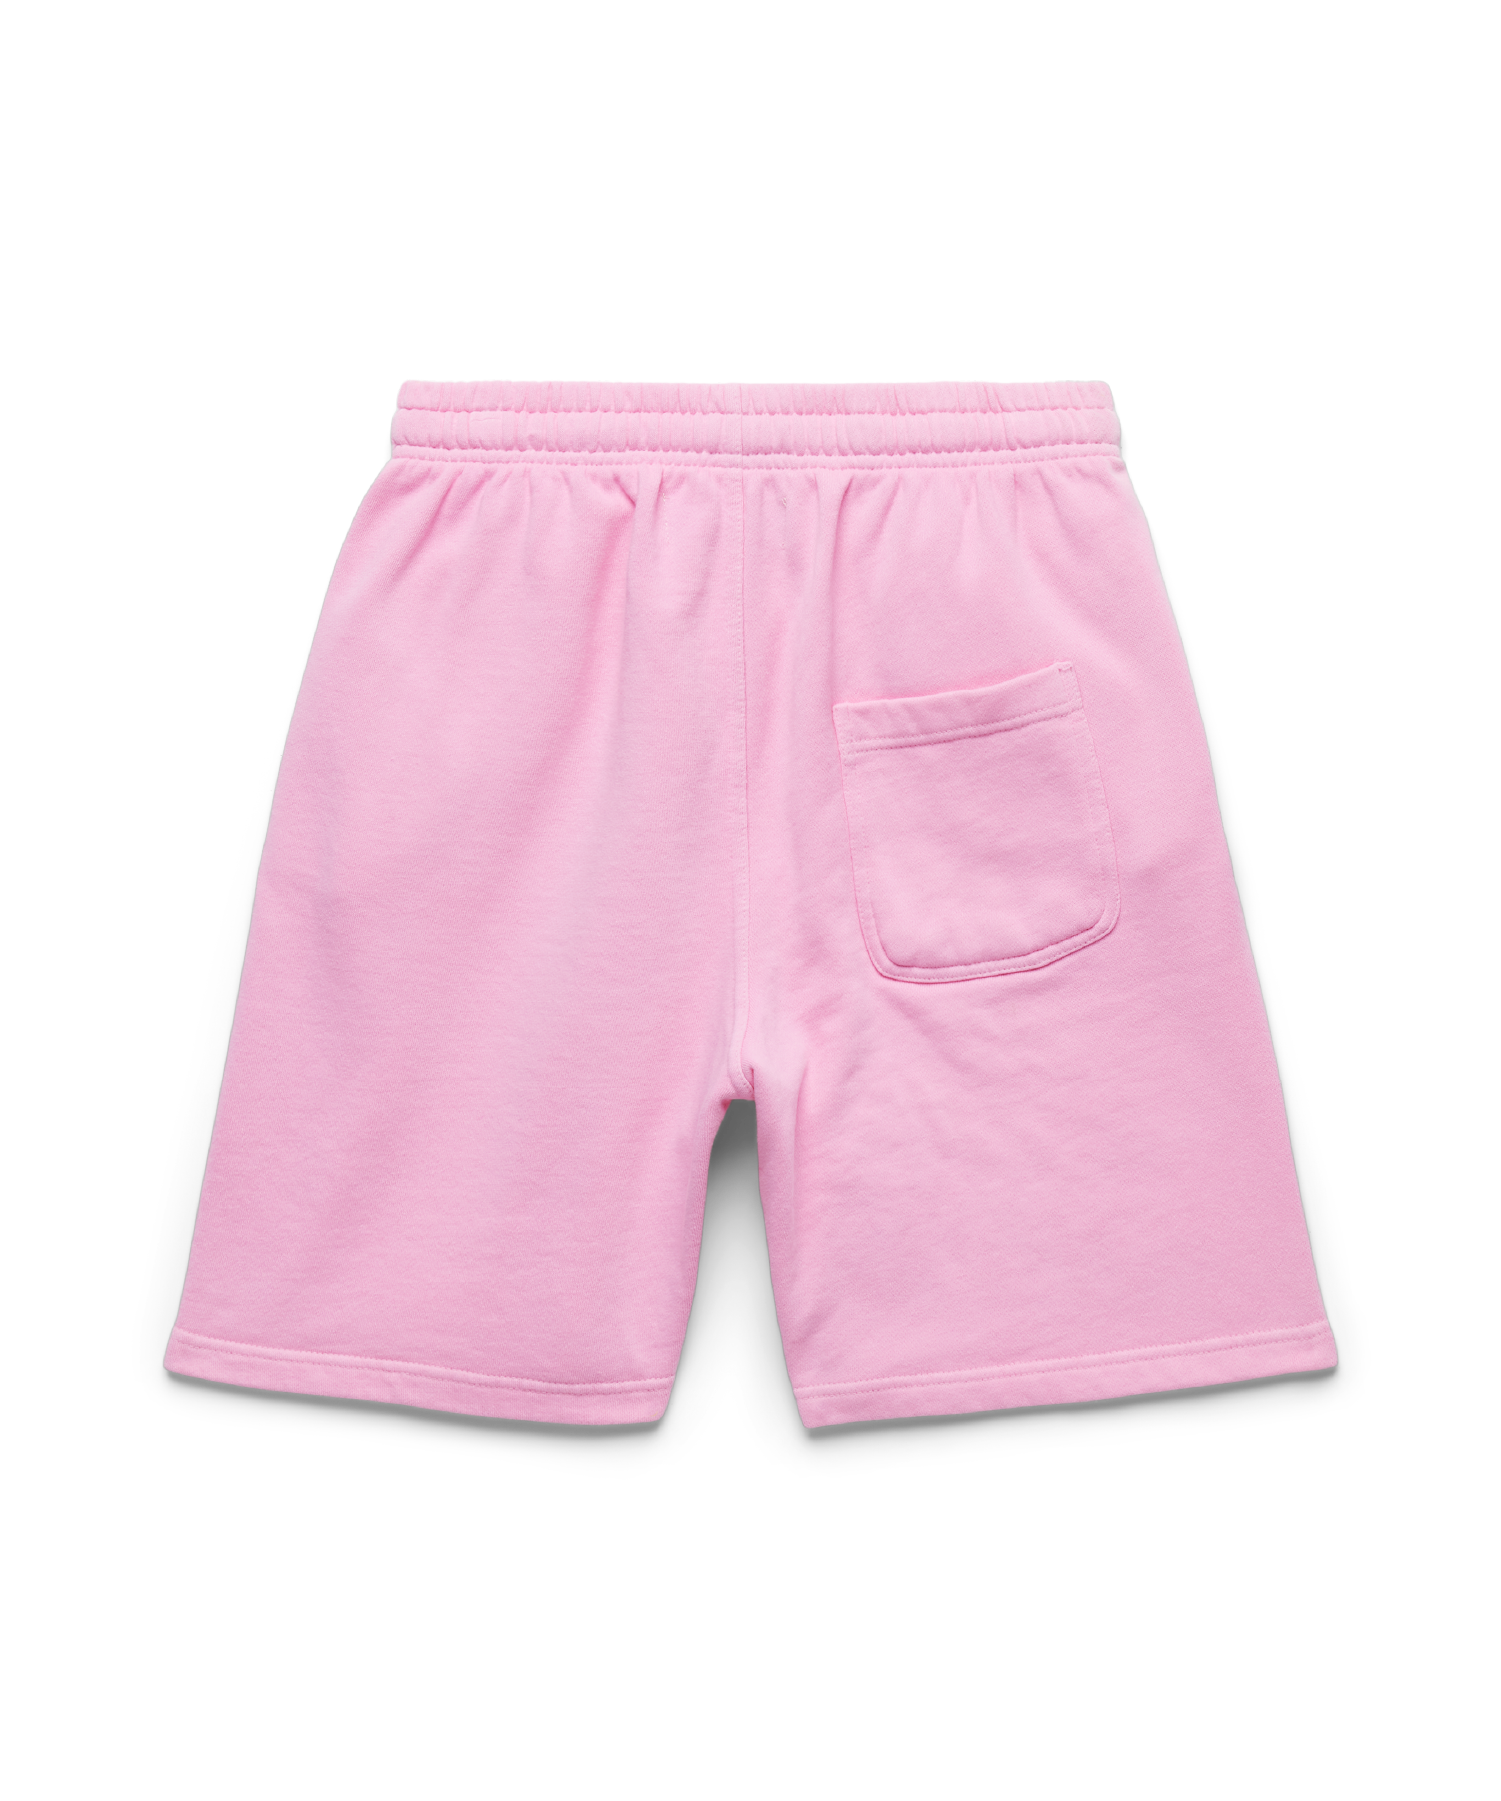 Ultimate Stoke - Sweat Shorts - Orchard Pink